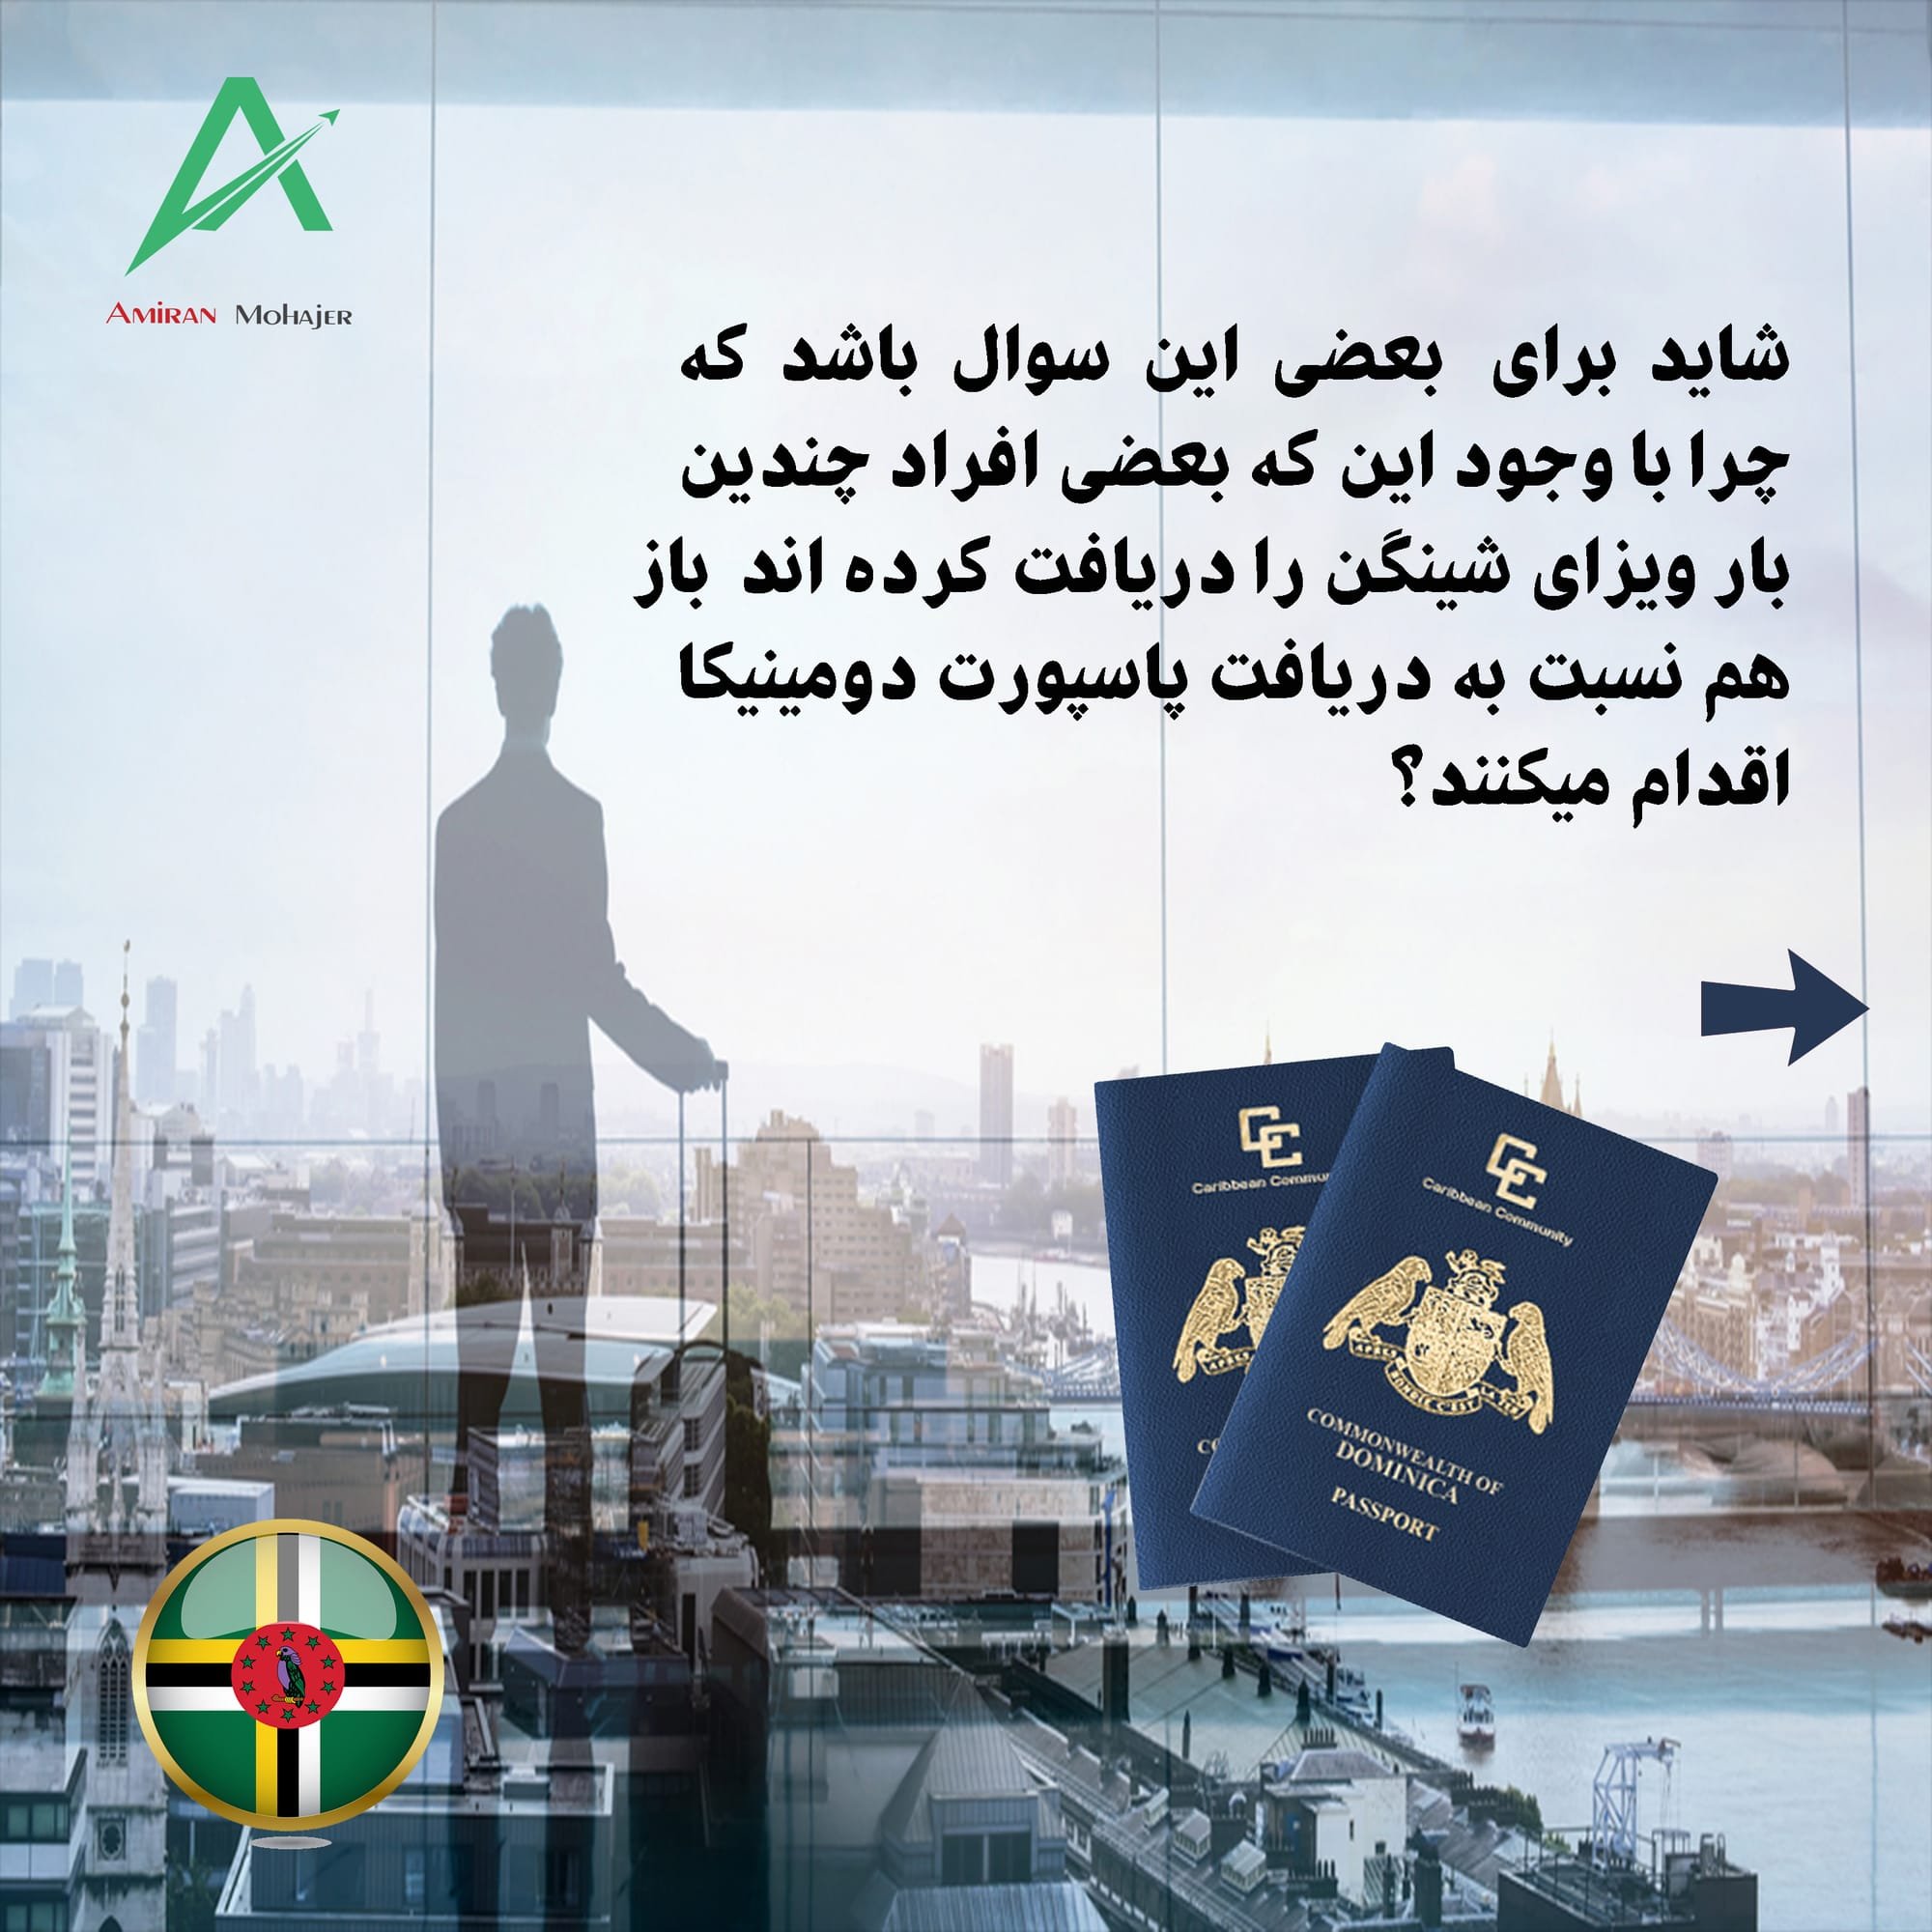 شاید برای بعضی سوال باشد که چرا با وجود این که بعضی افراد چندین بار ویزای شینگن را دریافت کرده  اند باز هم نسبت به دریافت پاسپورت دومینیکا اقدام می کنند؟